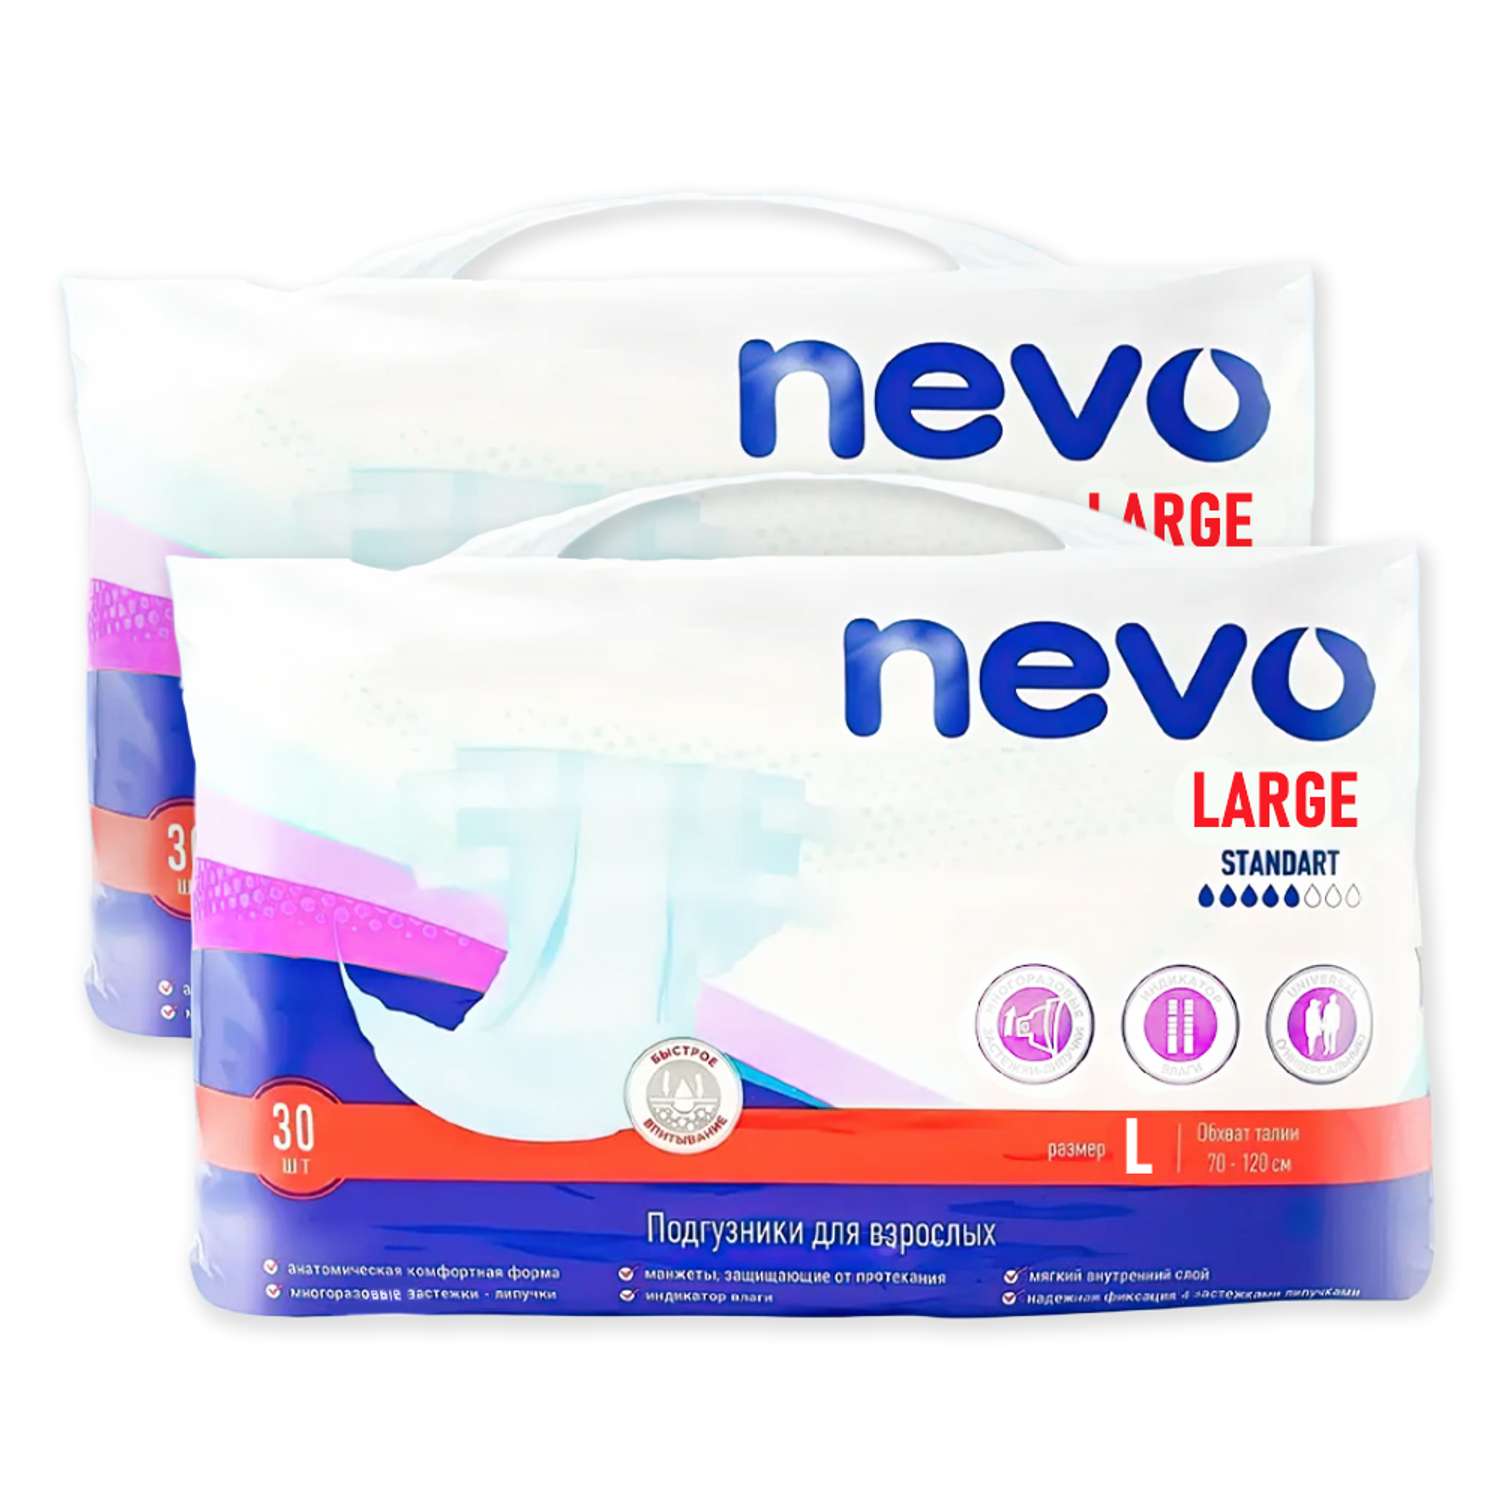 Подгузники для взрослых Nevo Large Standart размер L 2 упаковки по 30 шт - фото 1